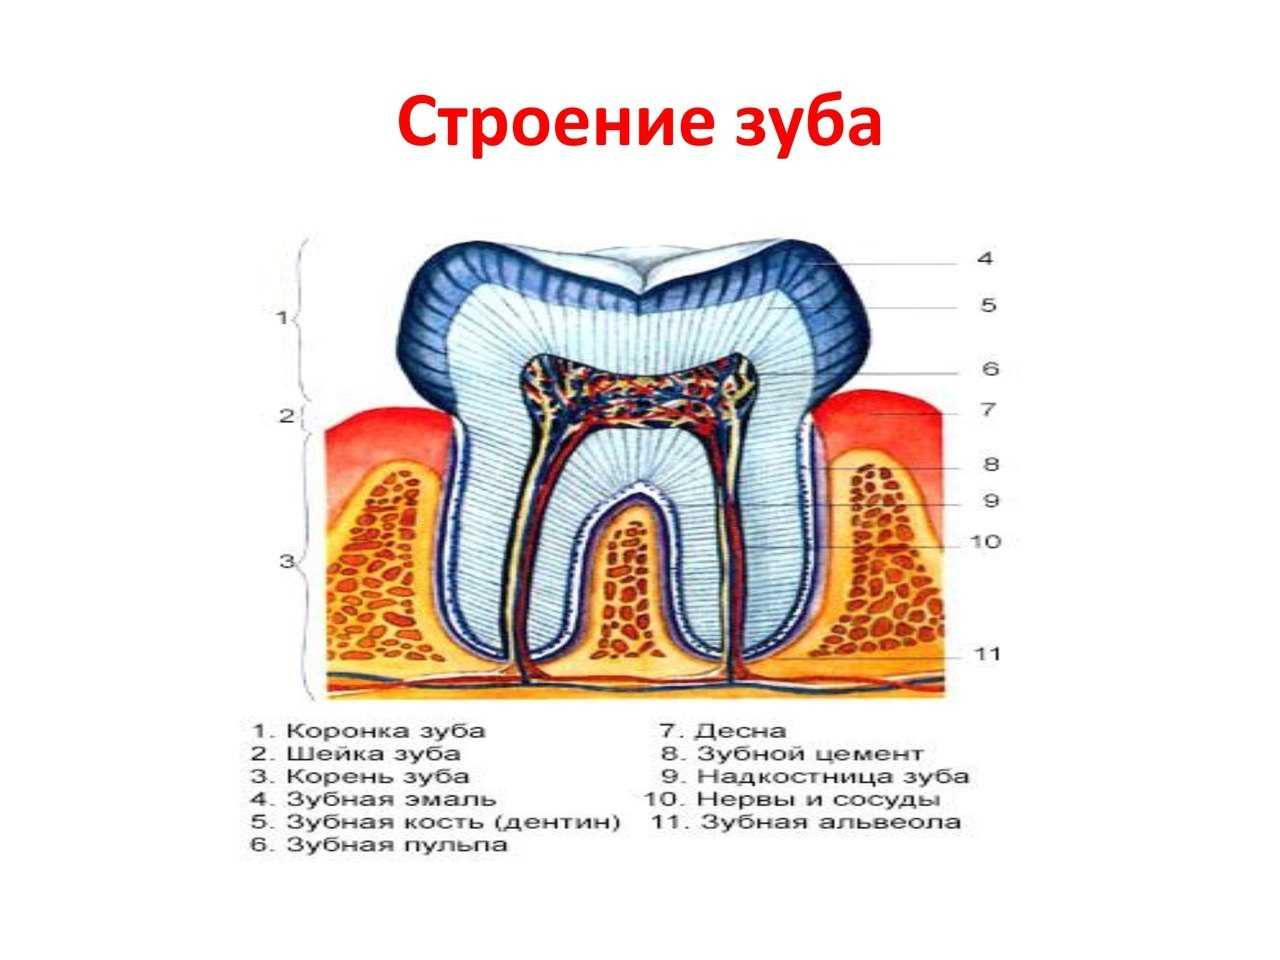 Строение зуба человека схема